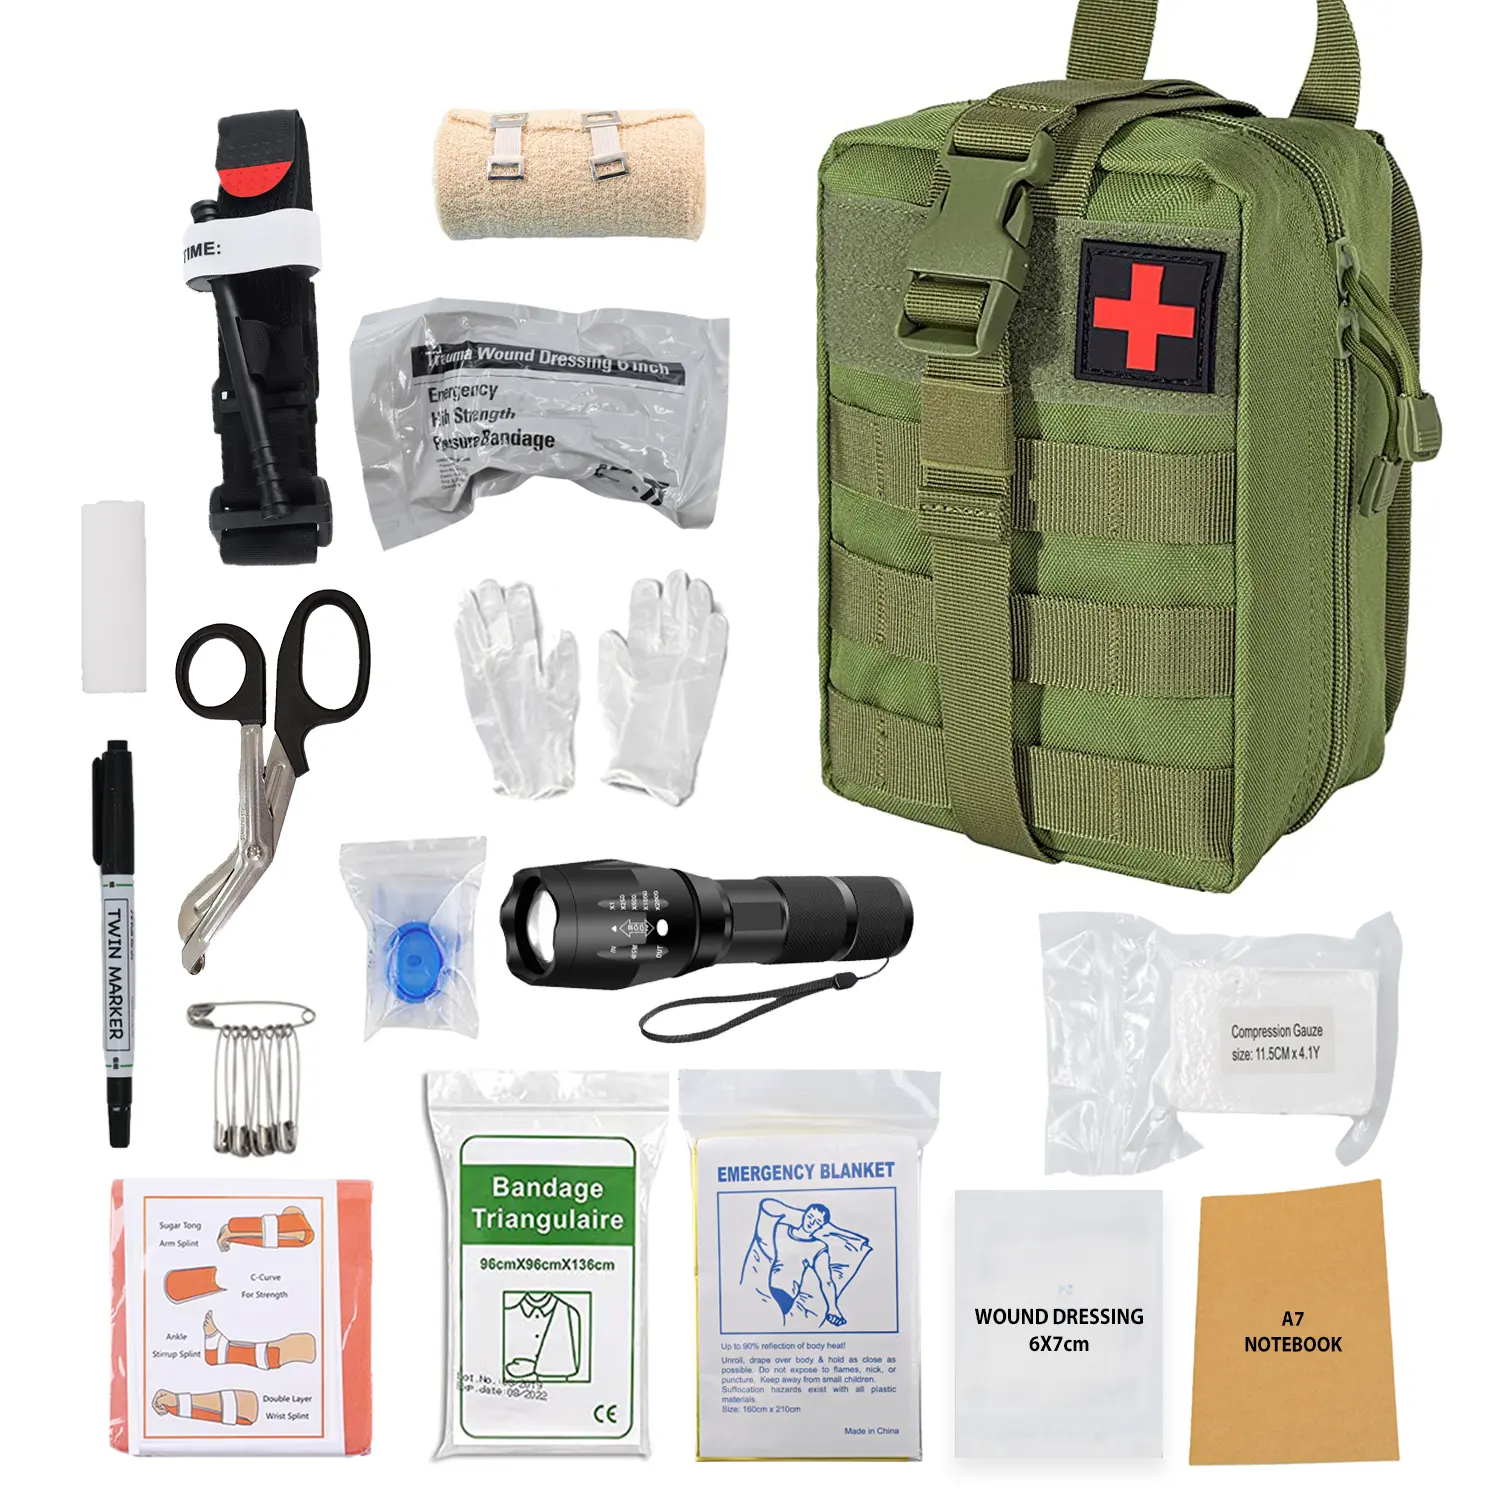 Внешняя Медицинская спасательная нейлоновая сумка Anthrive 2022 для выживания в экстренных ситуациях, индивидуальная аптечка первой помощи